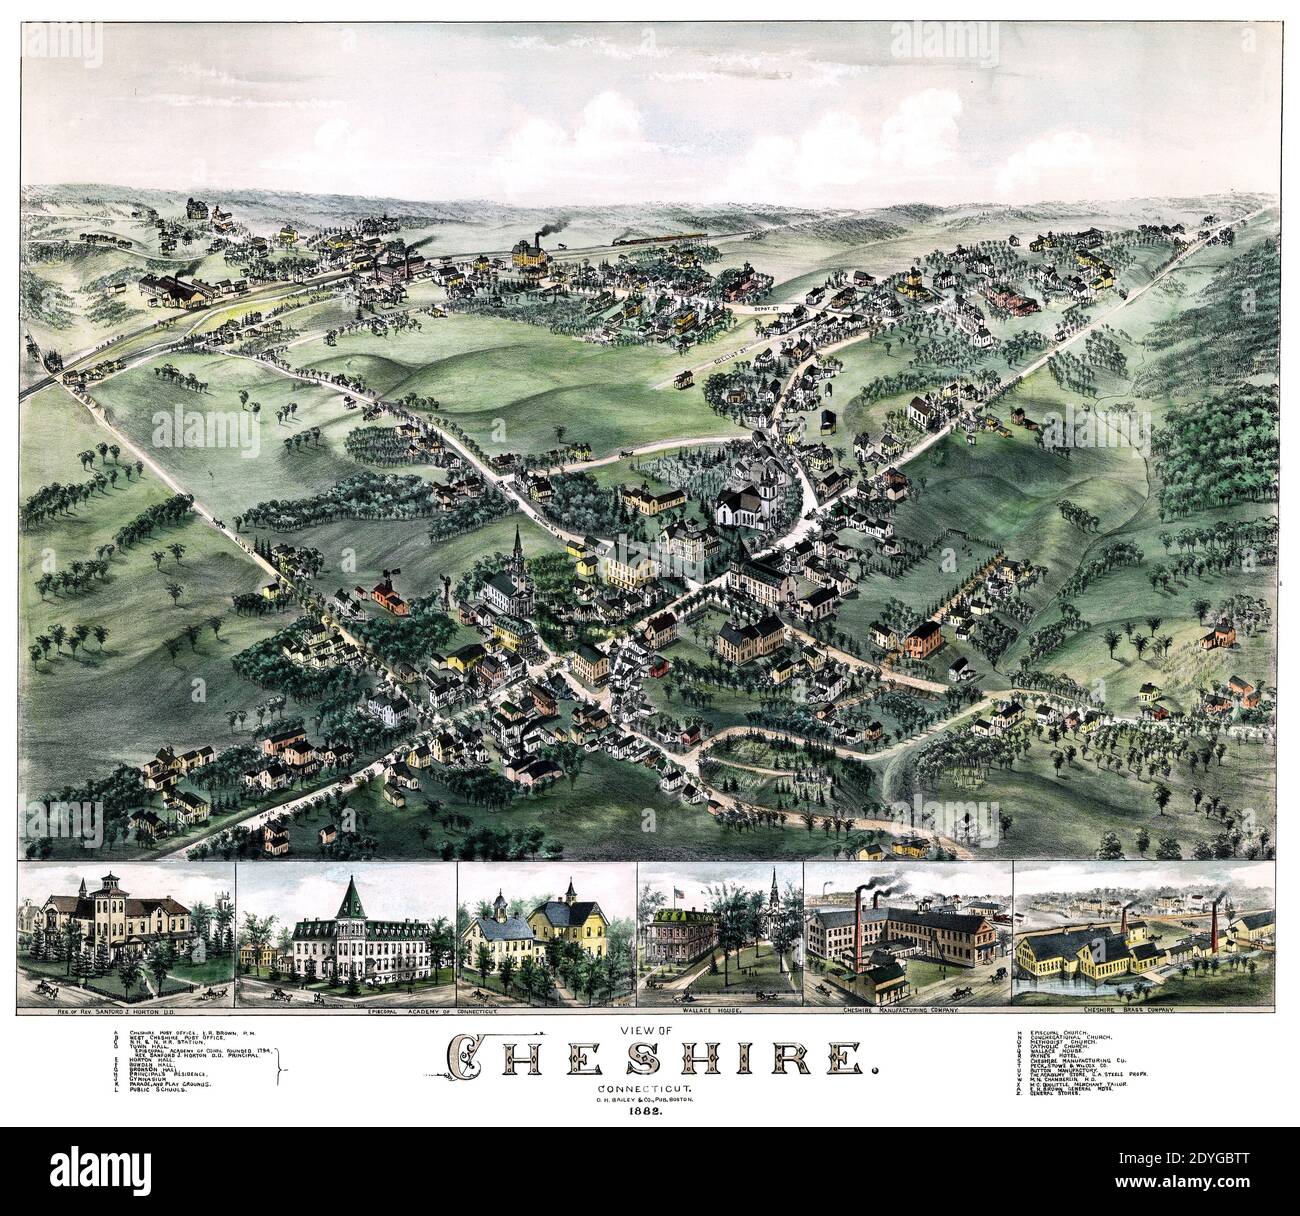 Perspektivische Ansicht von Cheshire, Connecticut, von 1882 Karte. Beachten Sie die Position der Points of Interest. Stockfoto